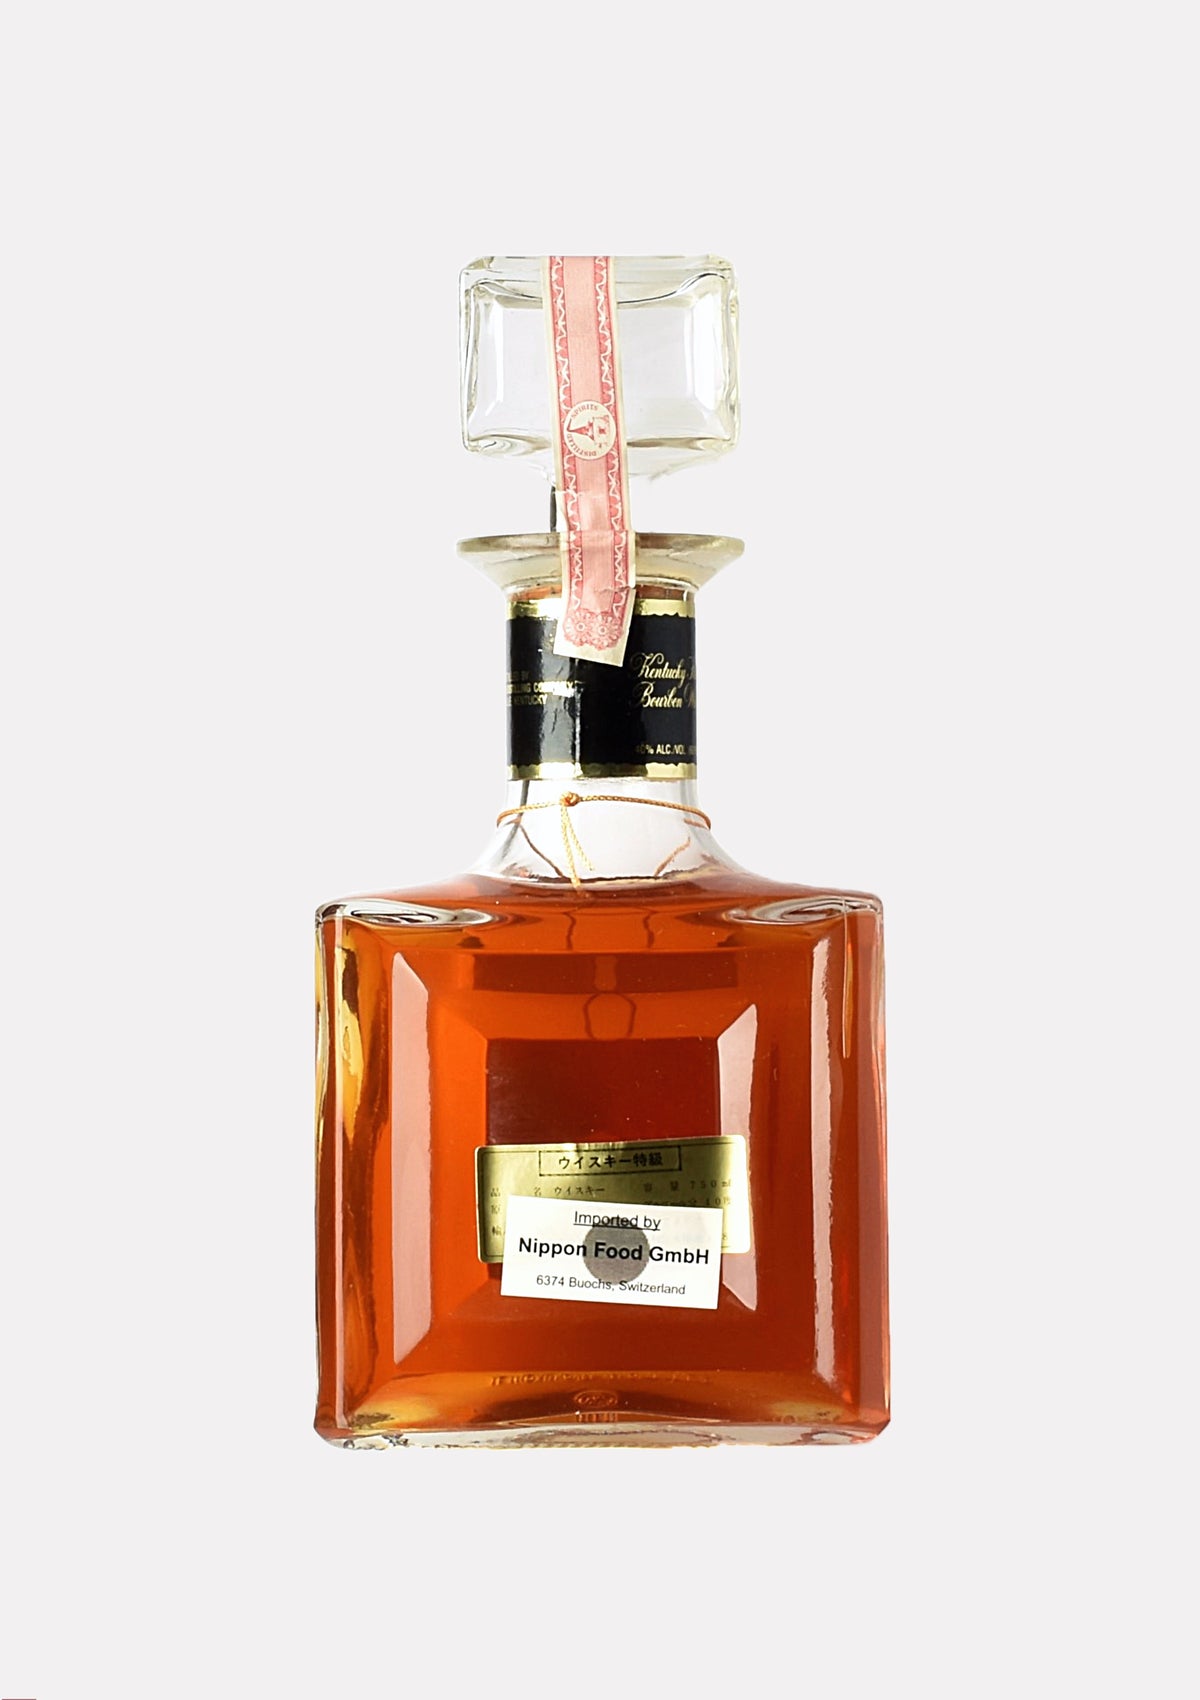 I.W. Harper Gold Medal Kentrucky Straight Bourbon Whiskey